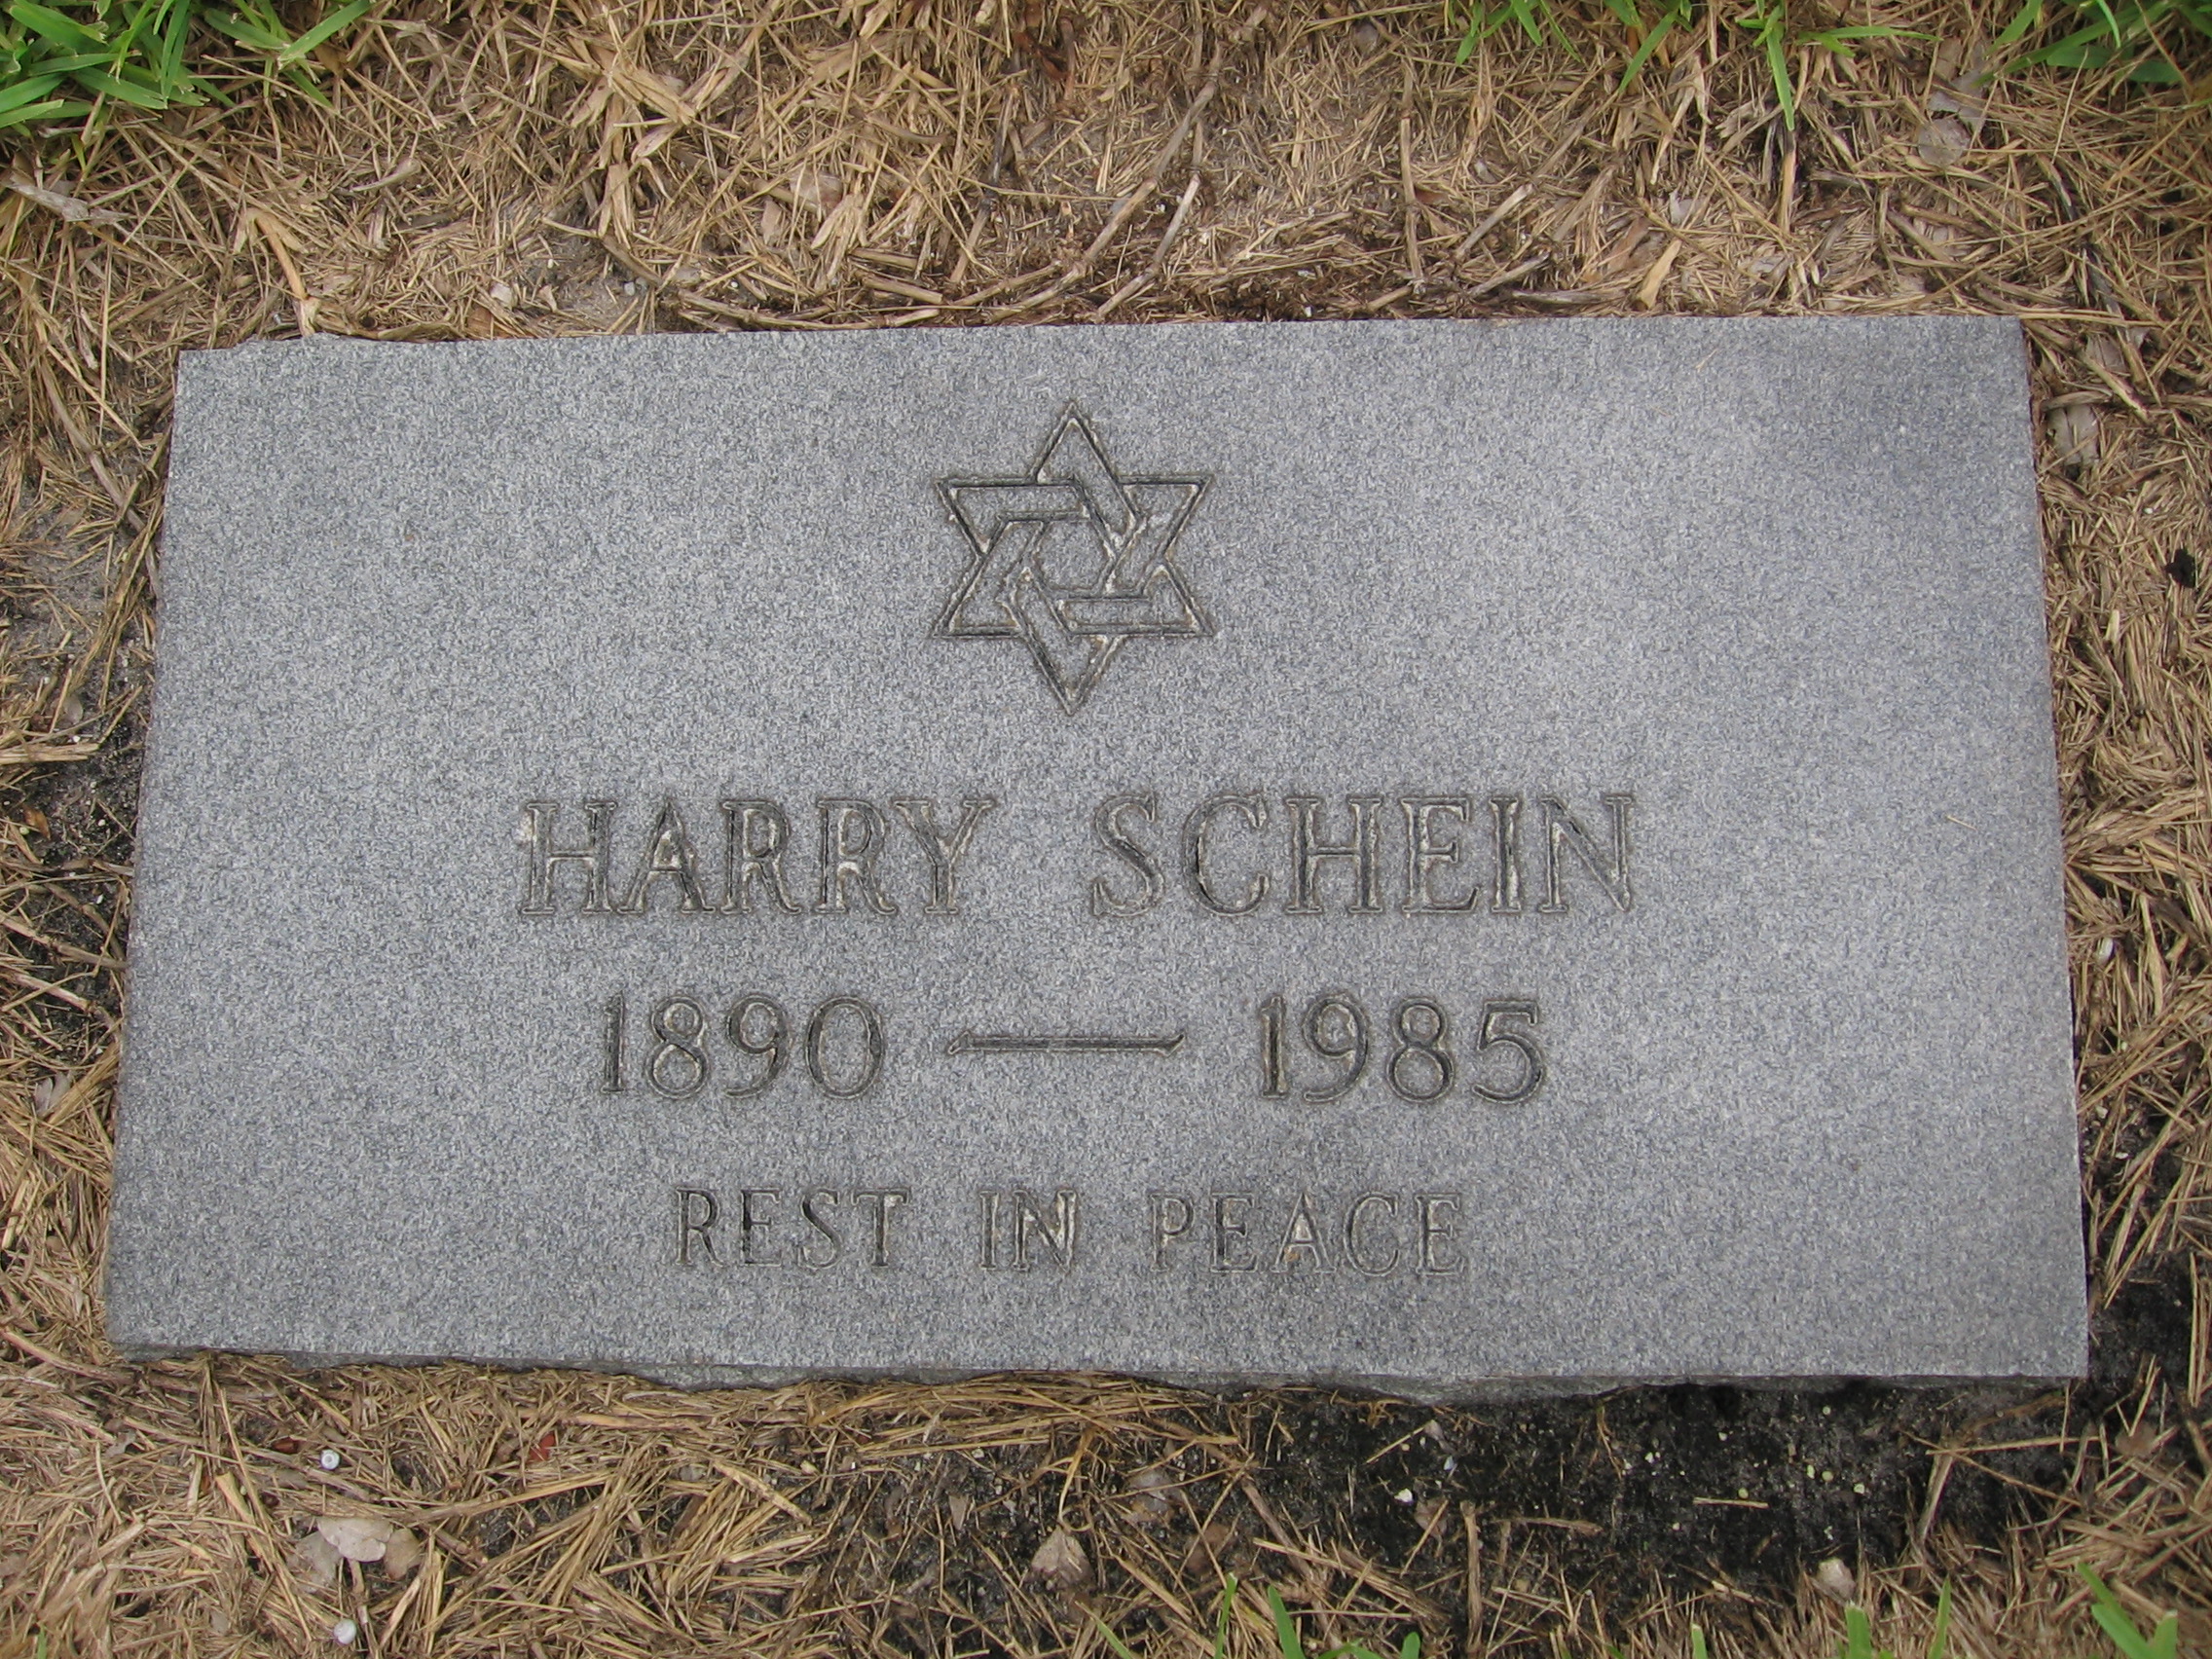 Harry Schein